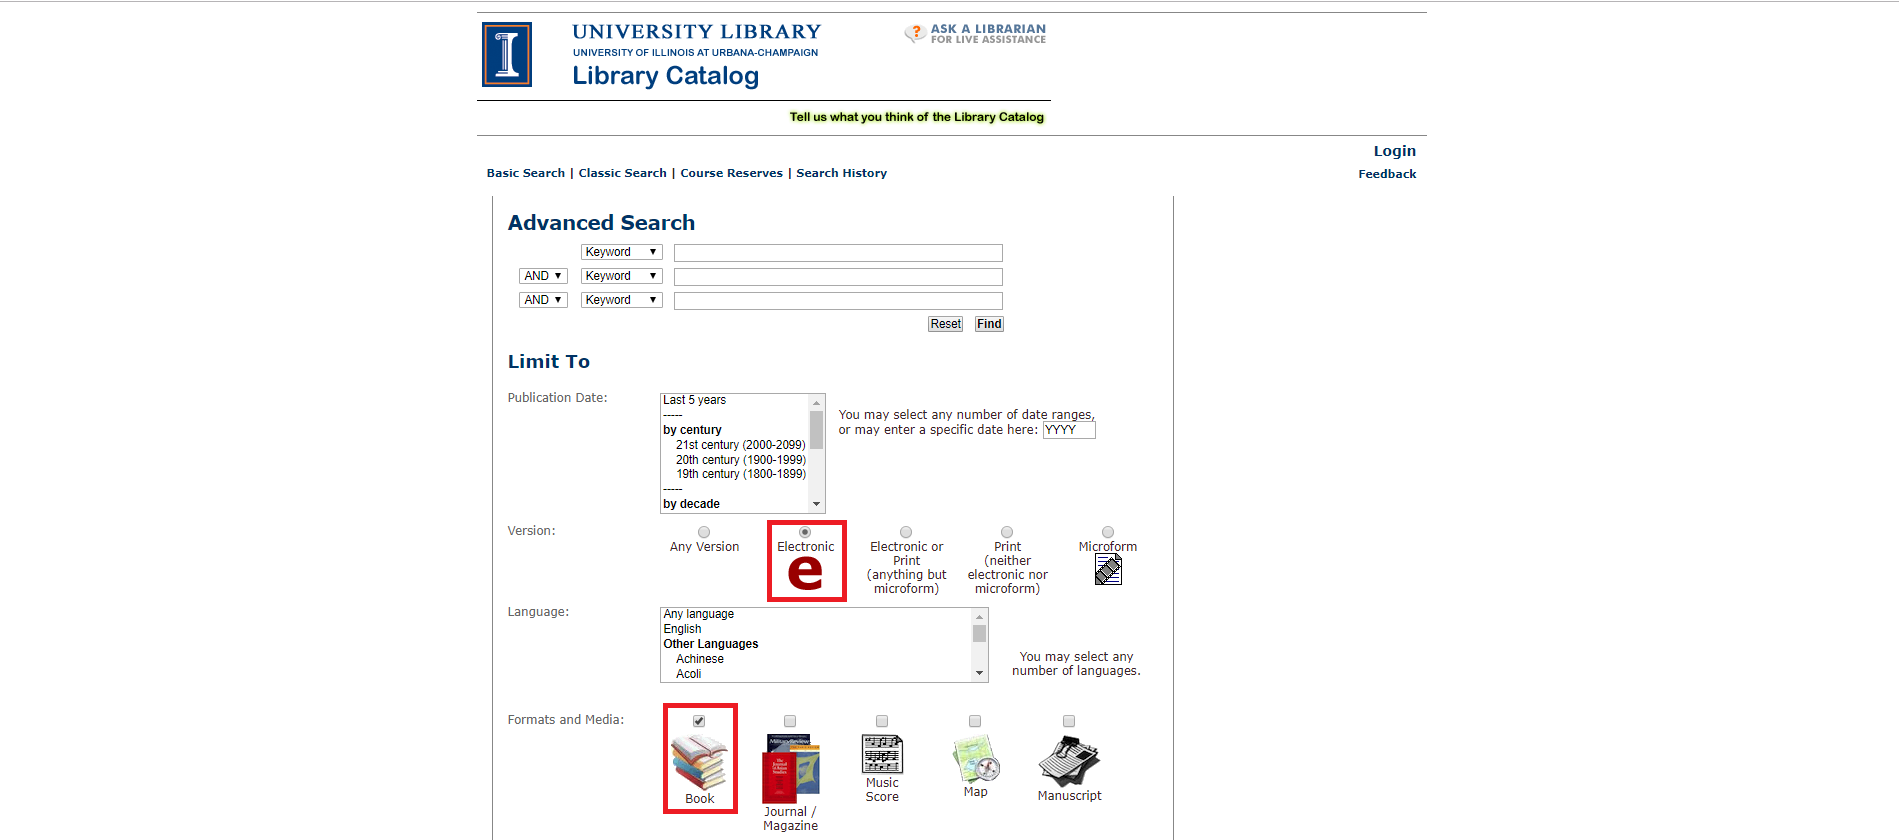 红色矩形突出显示了图书馆目录的高级搜索页上的电子和图书选项